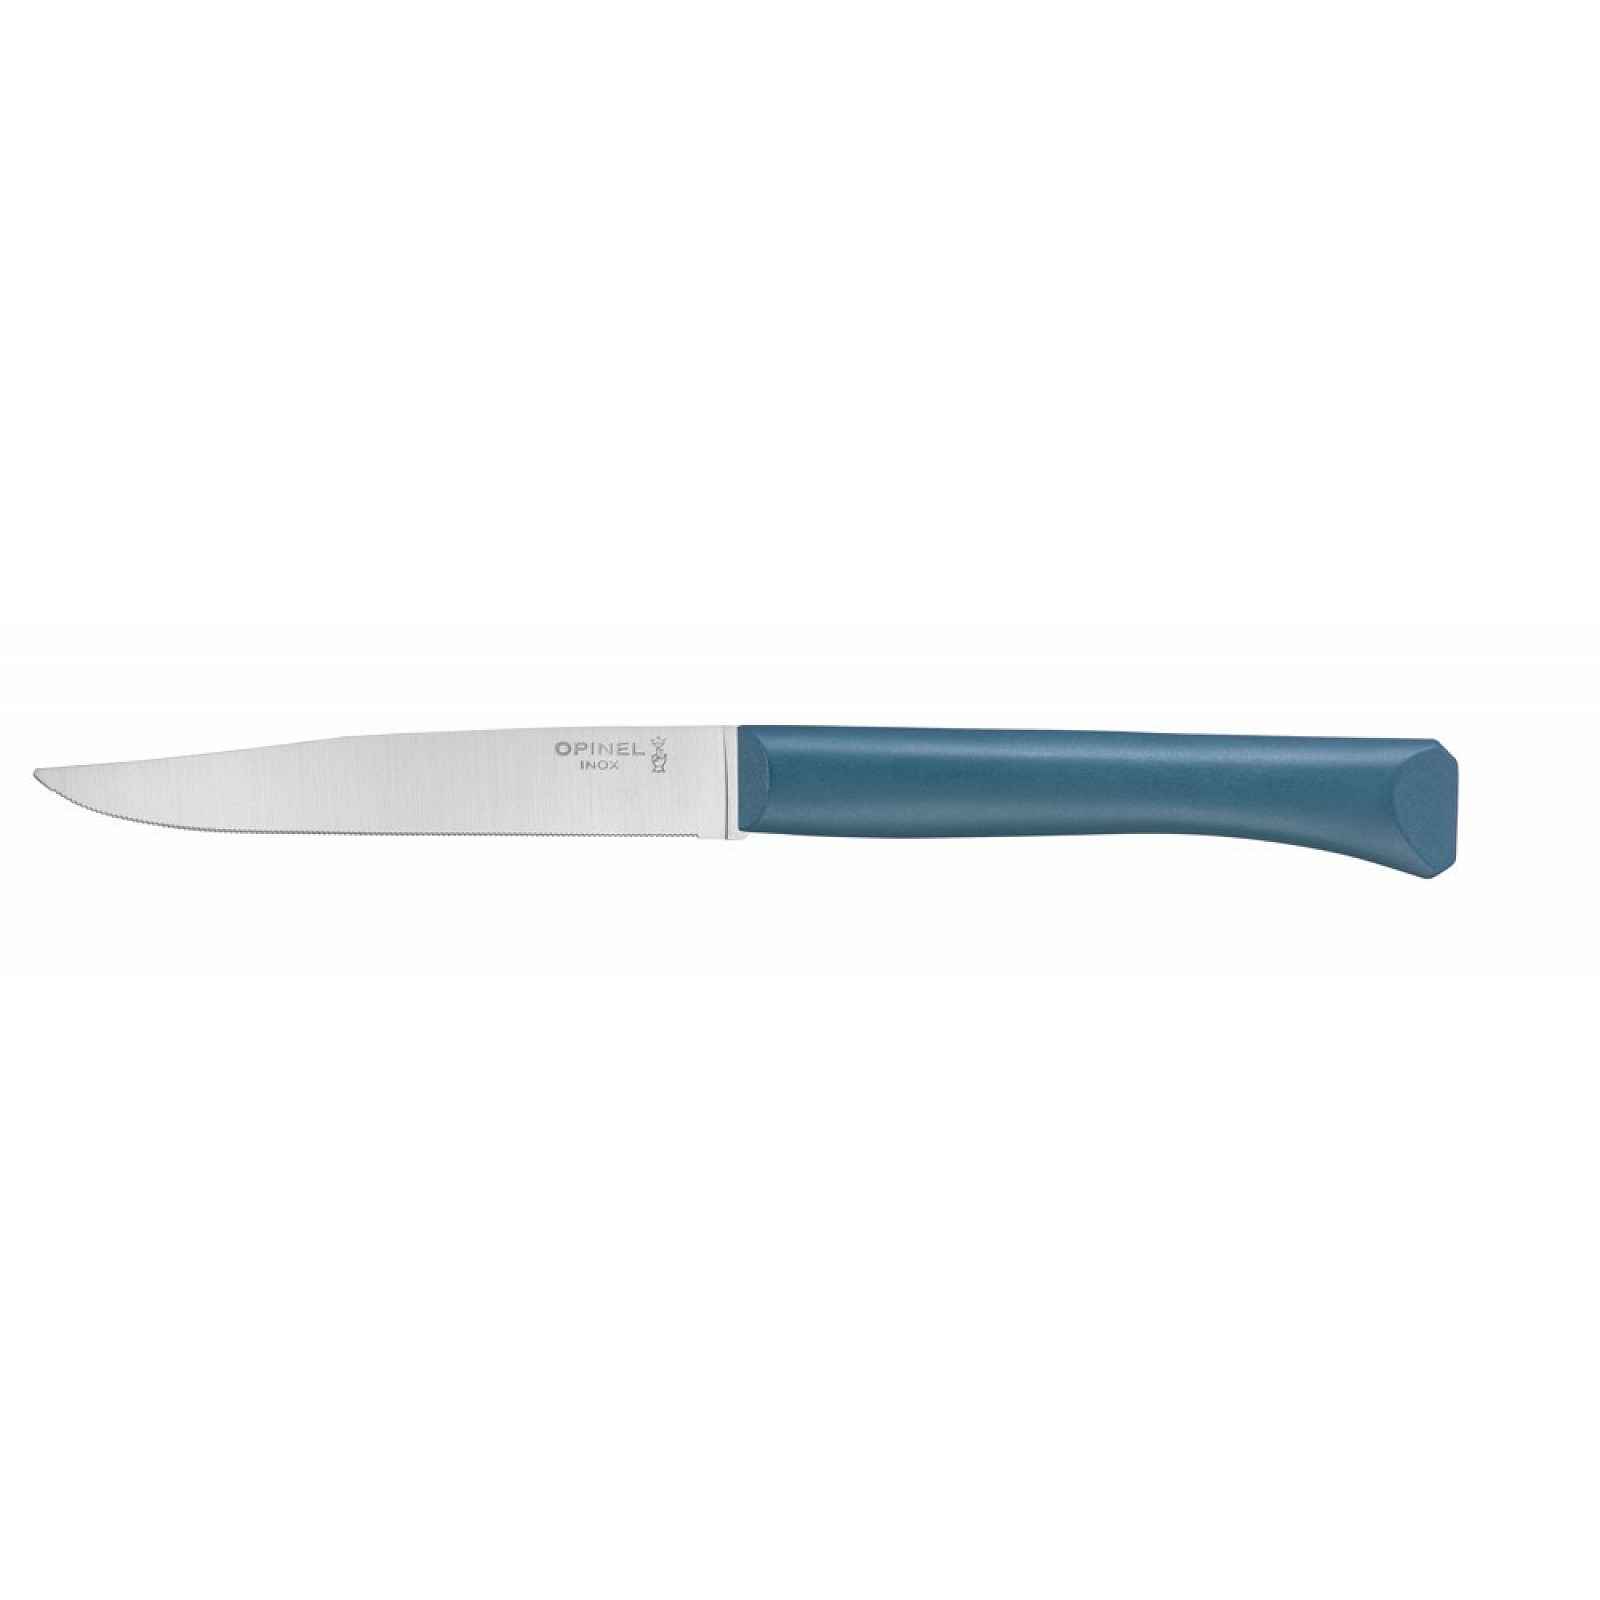 Opinel Bon Appetit steakový nůž s polymerovou rukojetí, tyrkysový, čepel 11 cm 002190